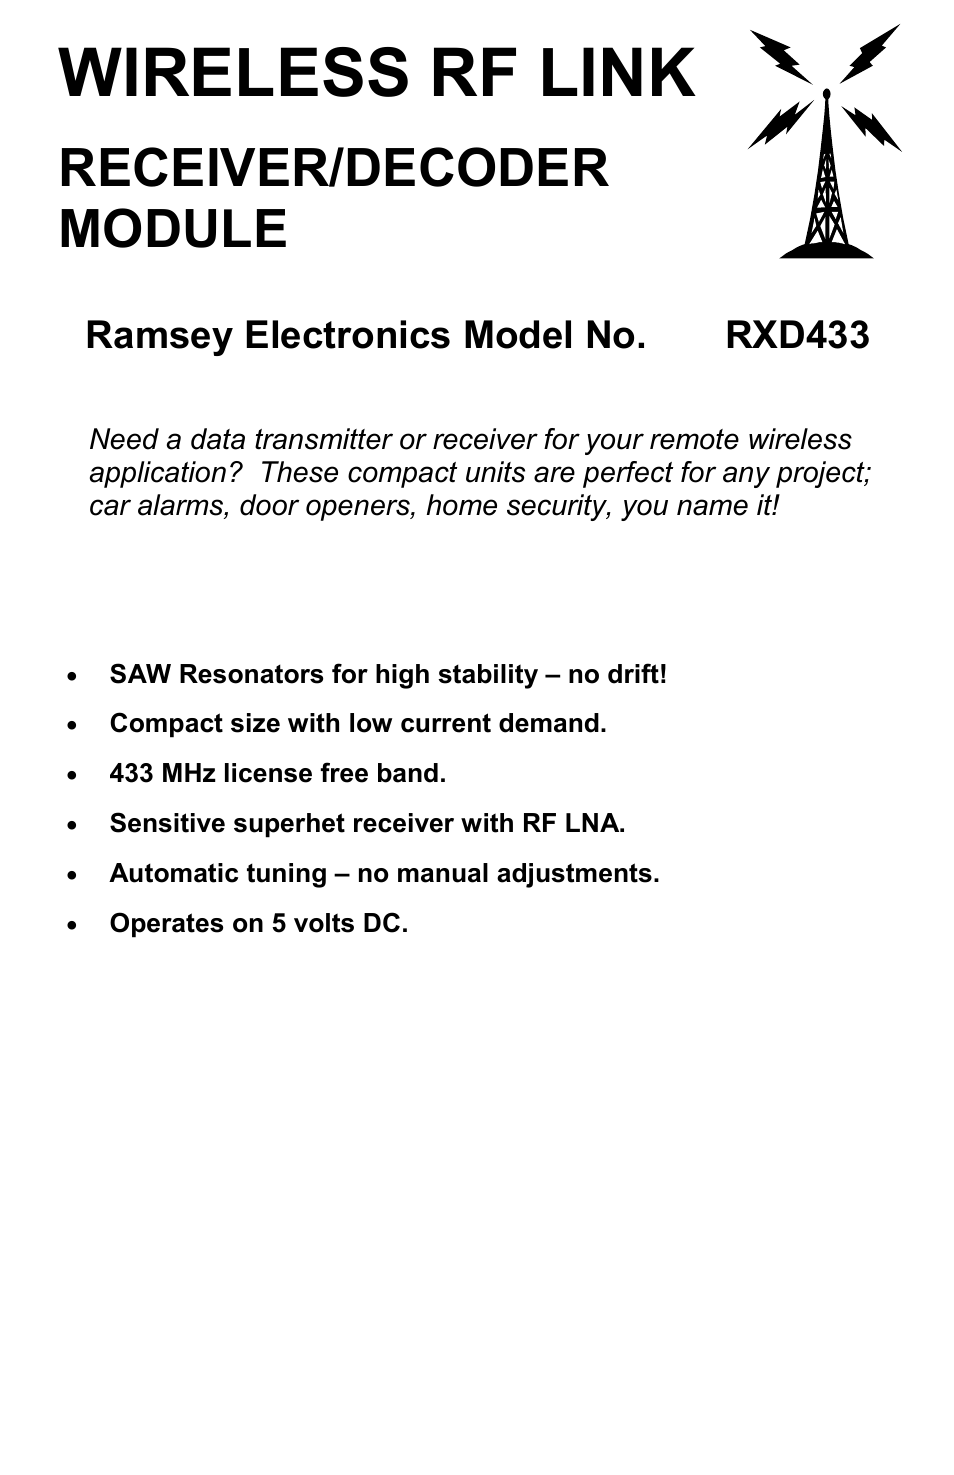 Wireless RF Link Receiver/Decoder RXD433